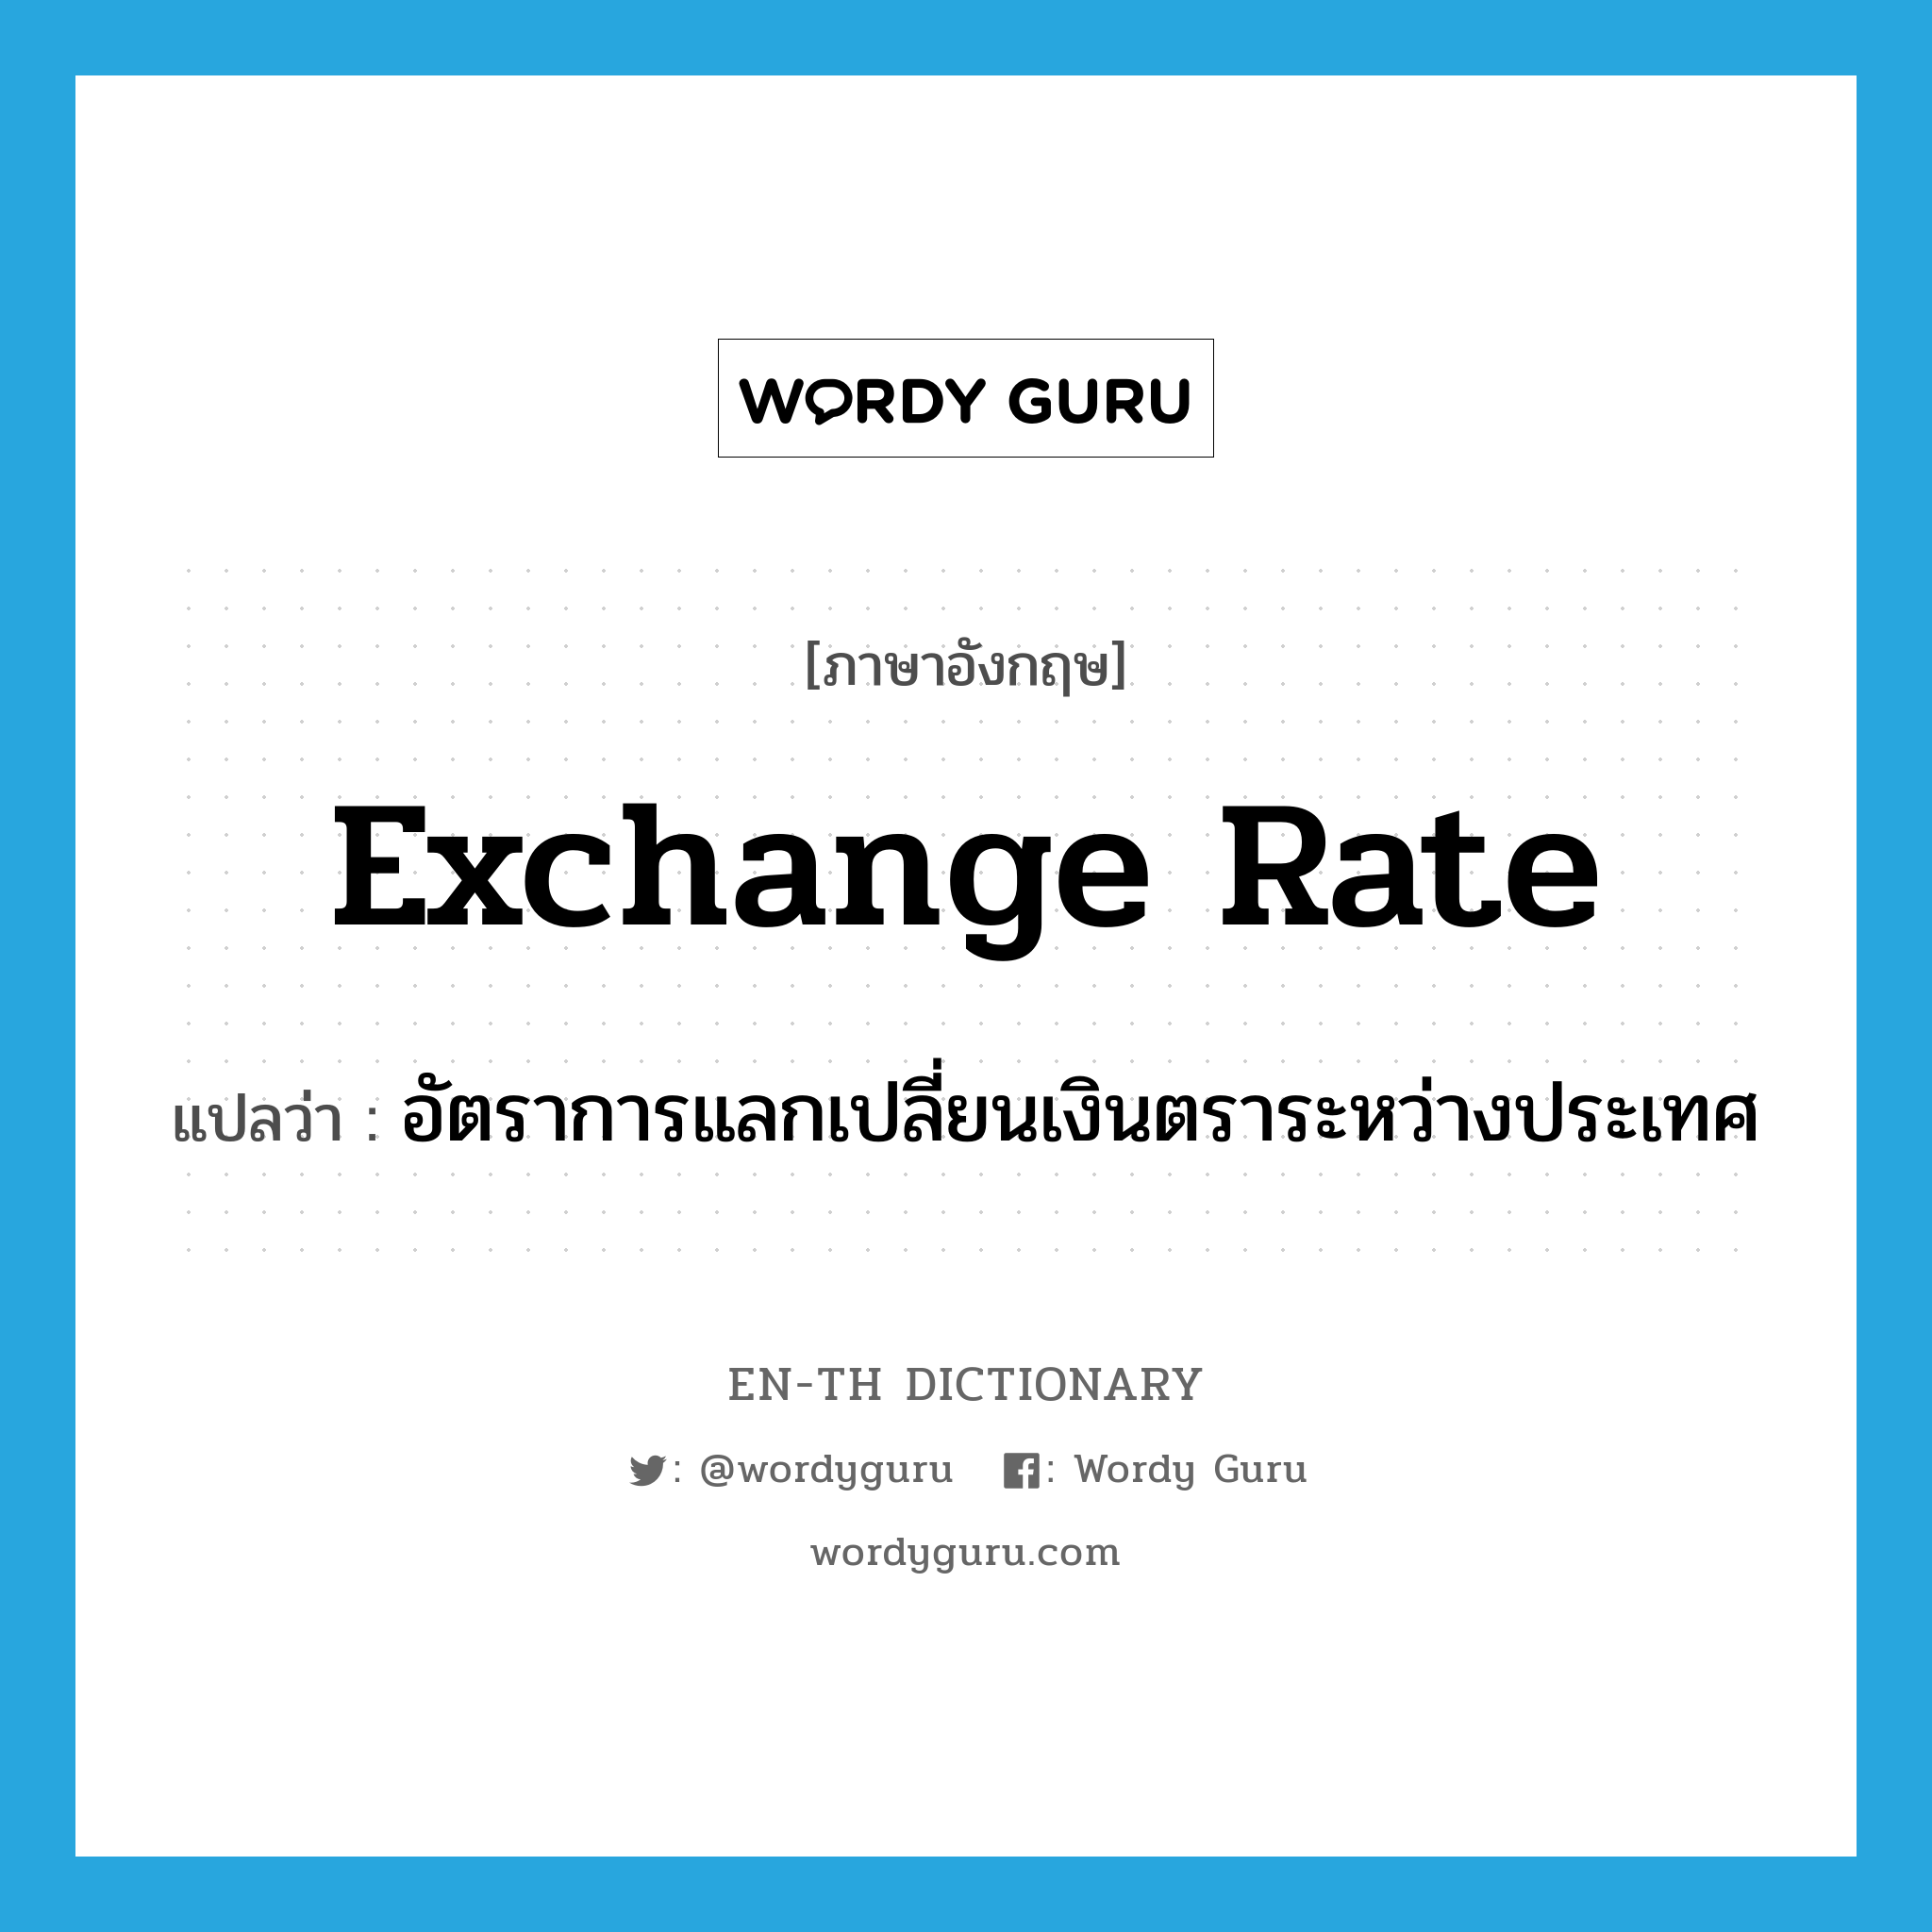 exchange rate แปลว่า?, คำศัพท์ภาษาอังกฤษ exchange rate แปลว่า อัตราการแลกเปลี่ยนเงินตราระหว่างประเทศ ประเภท N หมวด N